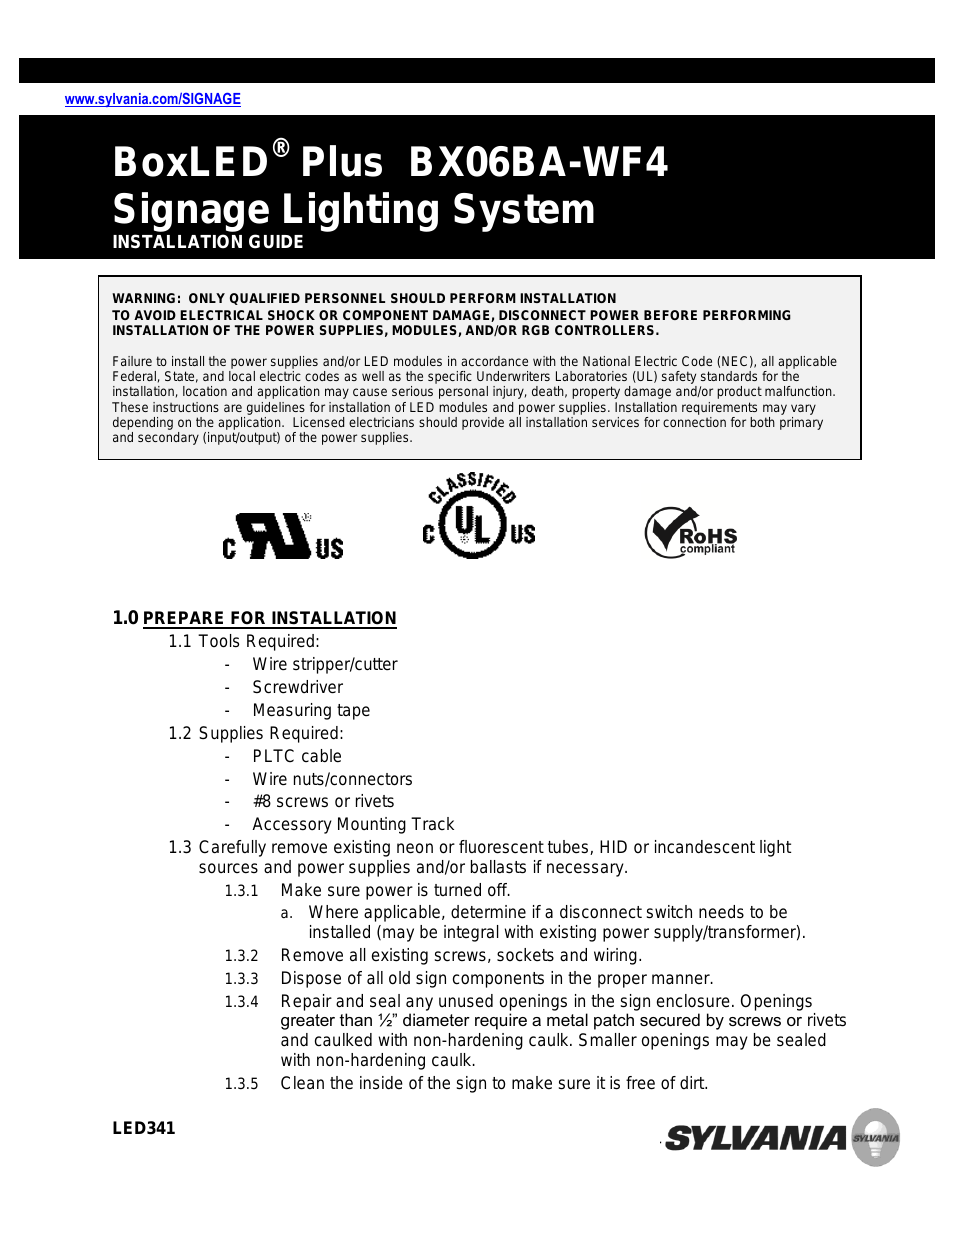 BoxLED Plus BX06BA-WF4